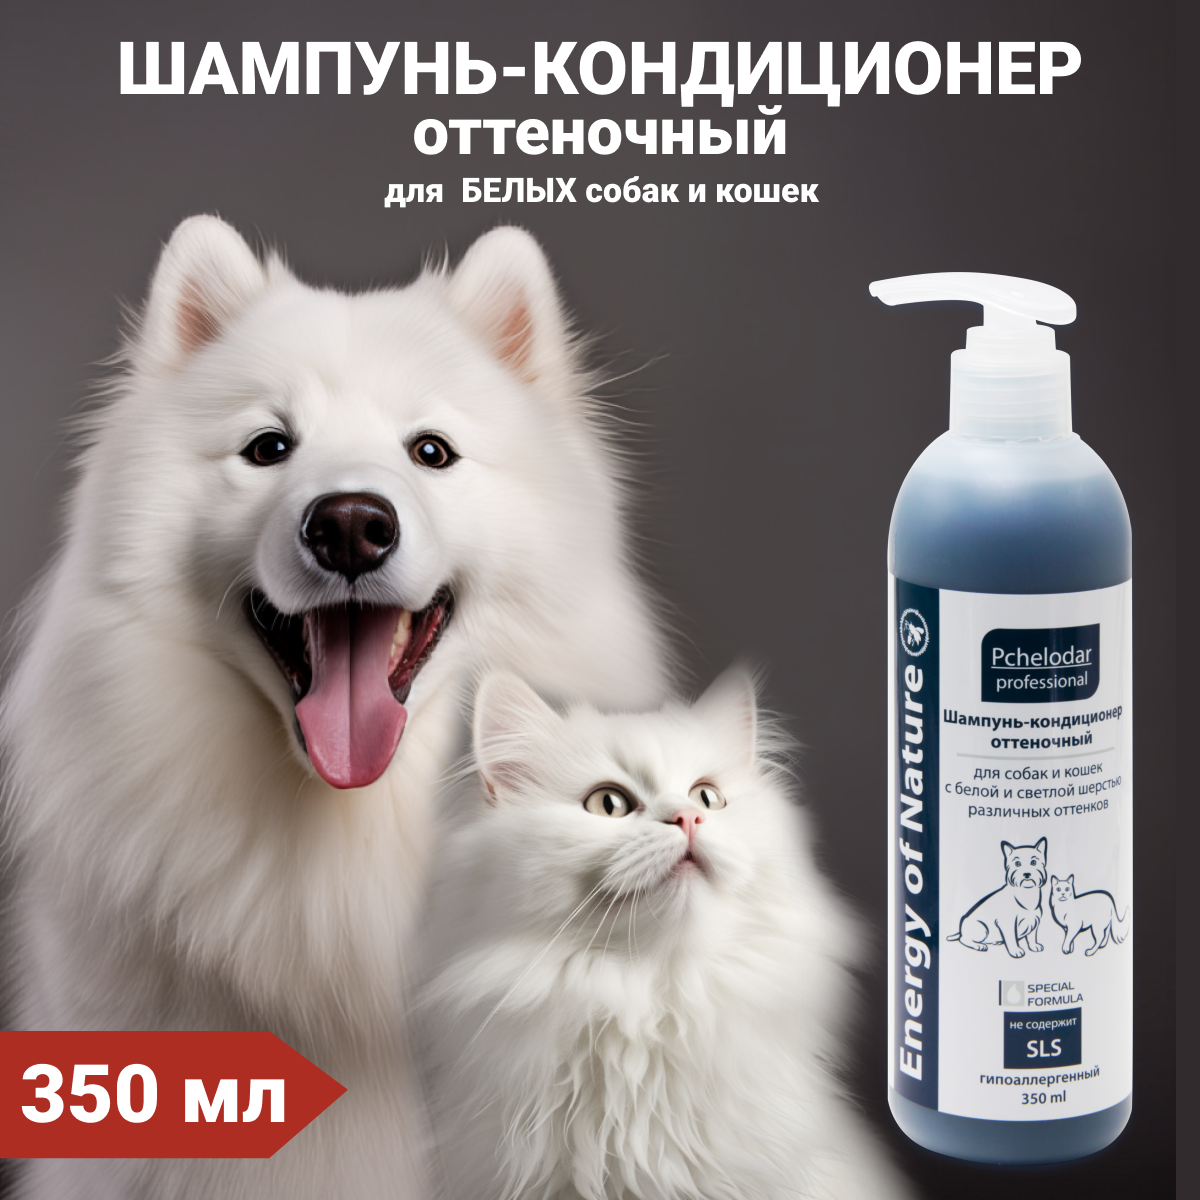 Шампунь-кондиционер оттеночный для собак и кошек с белой шерстью 350 мл